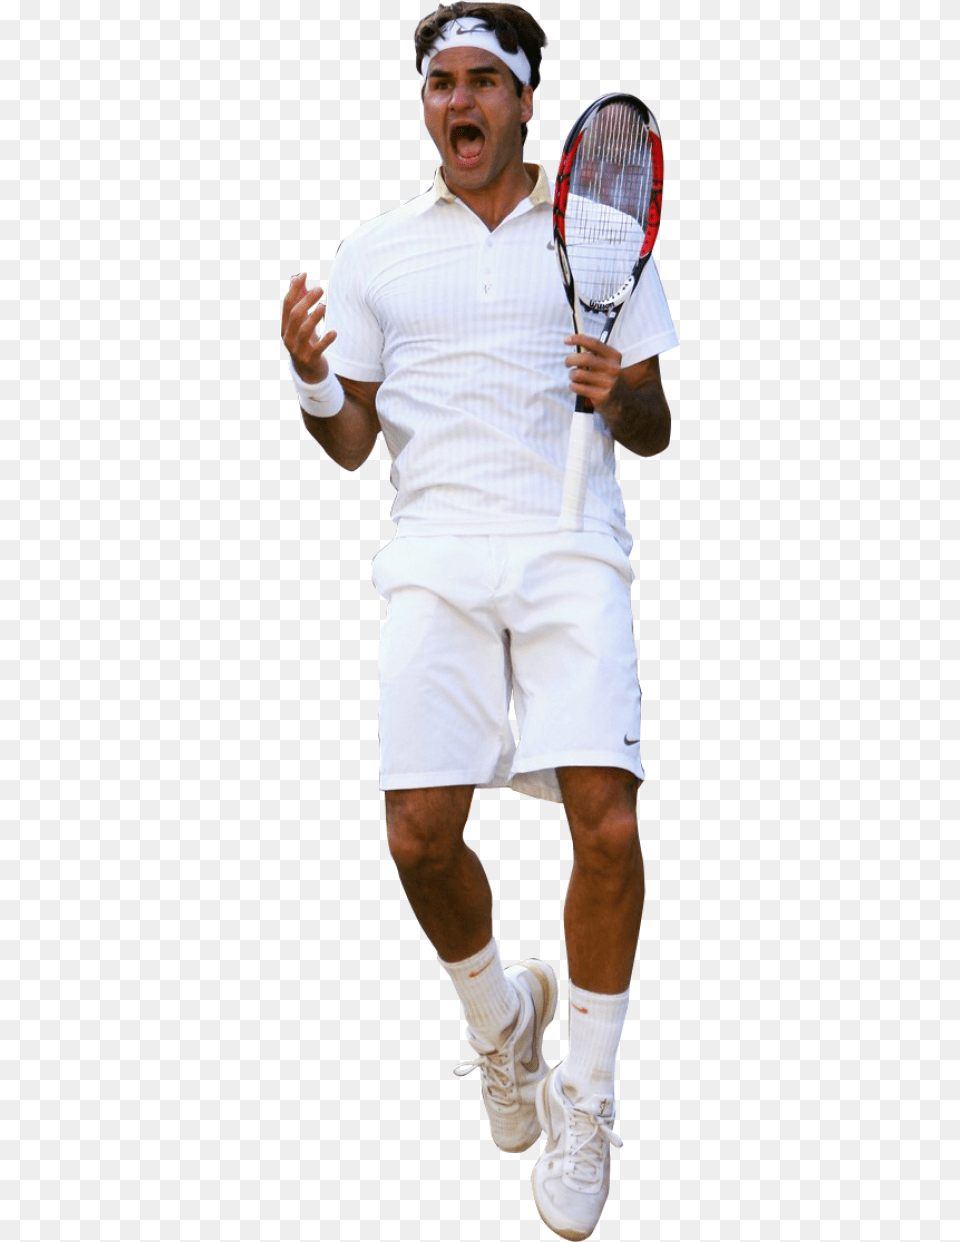 Roger Federer Clipart Background Roger Federer, Tennis Racket, Clothing, Tennis, Footwear Free Png Download